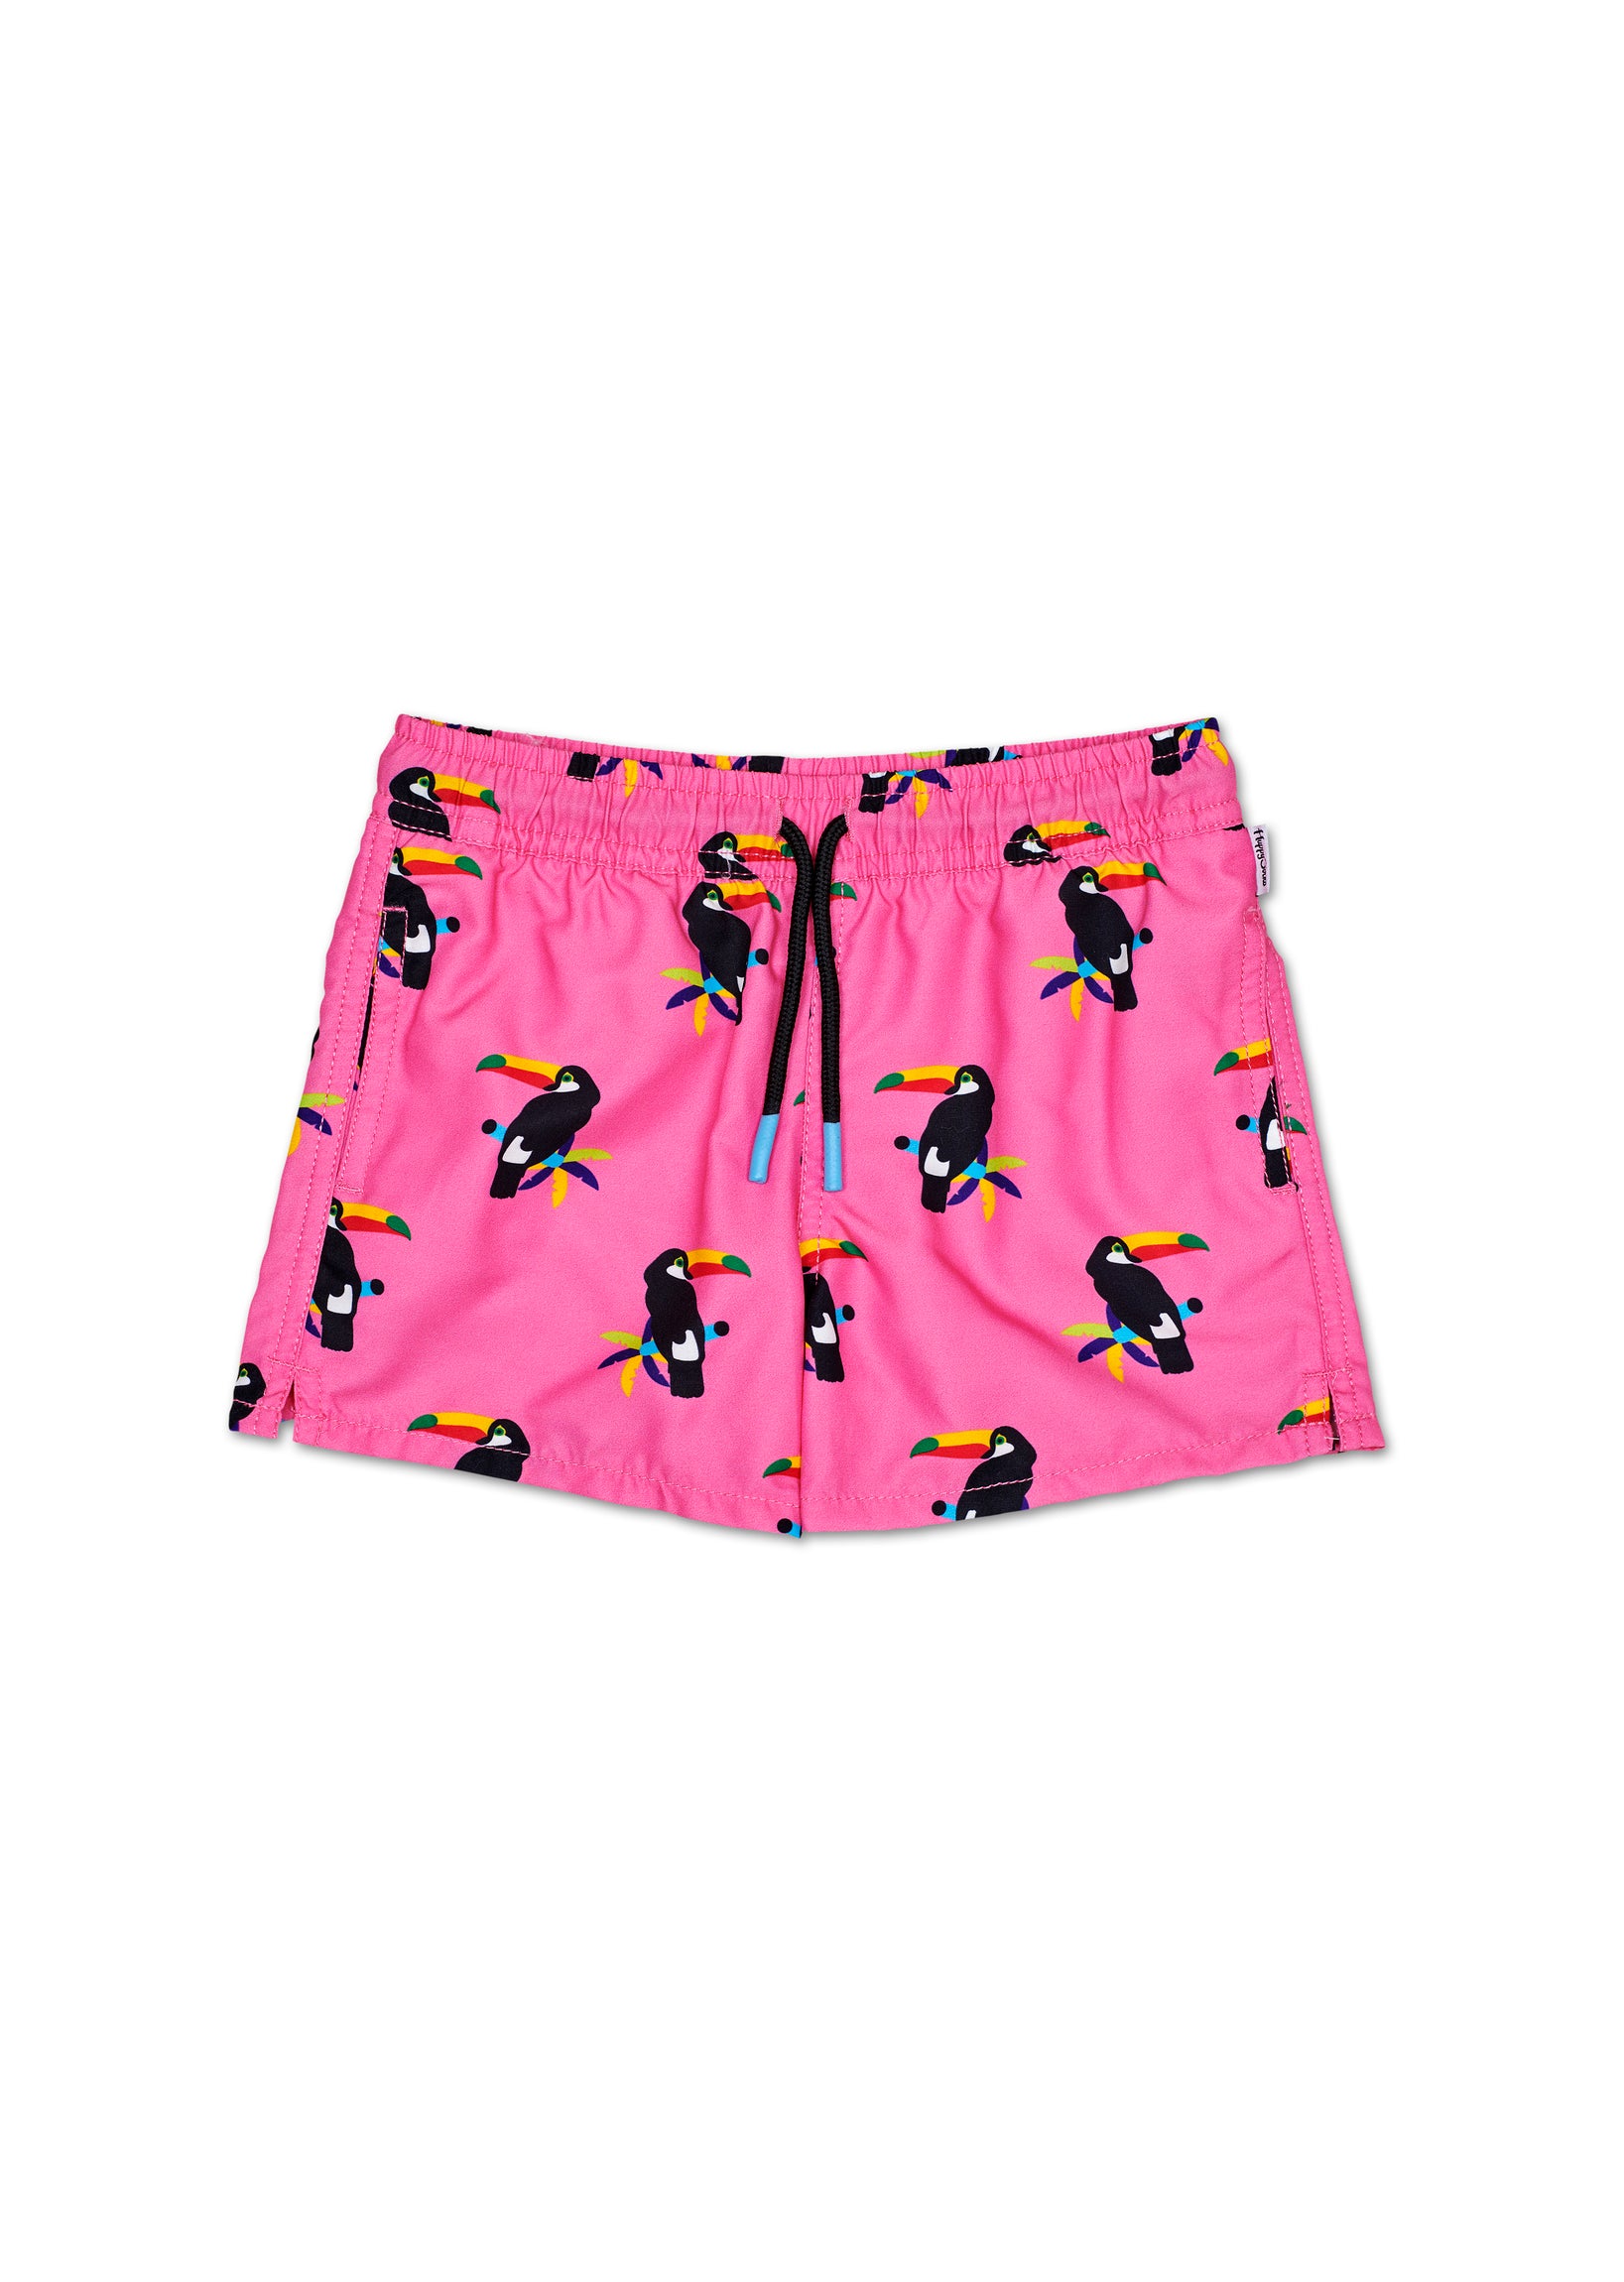 Detské ružové plavky Happy Socks s tukanom, vzor Toucan